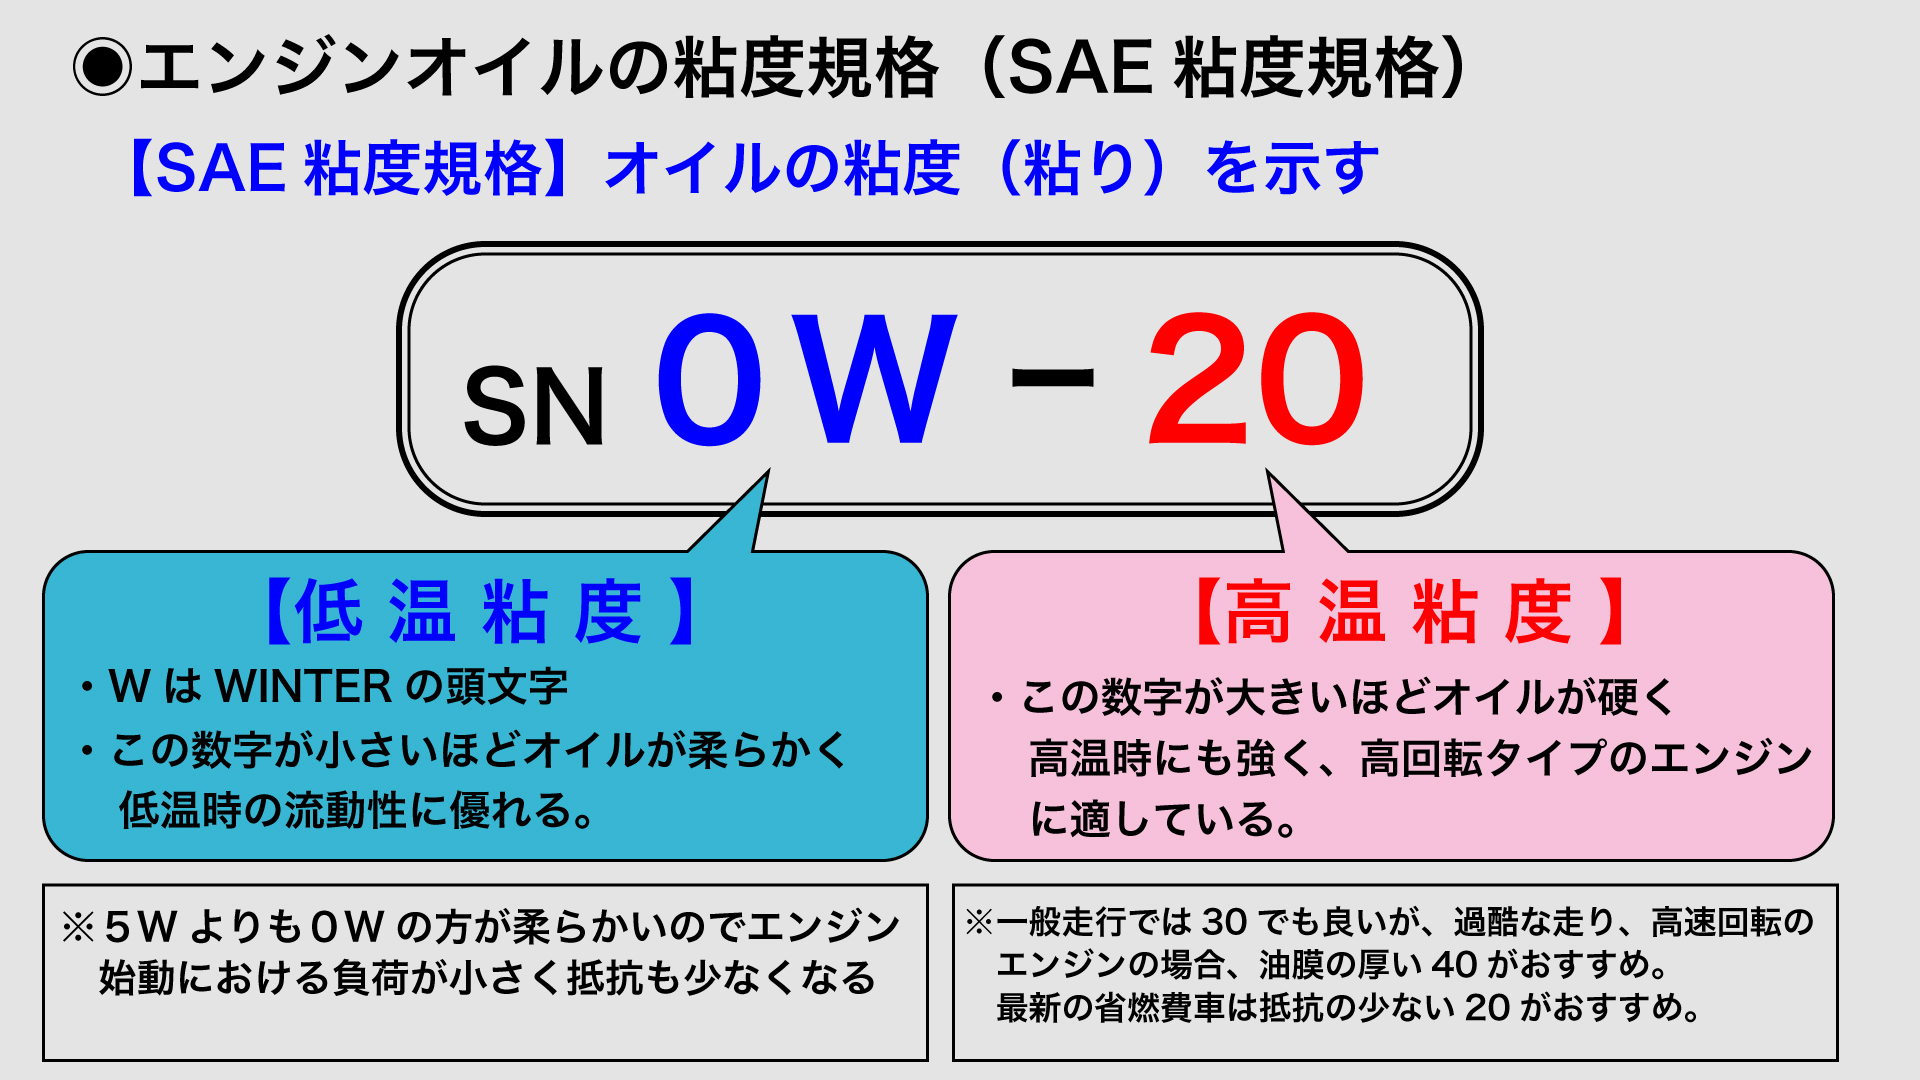 NEW-OIL−３